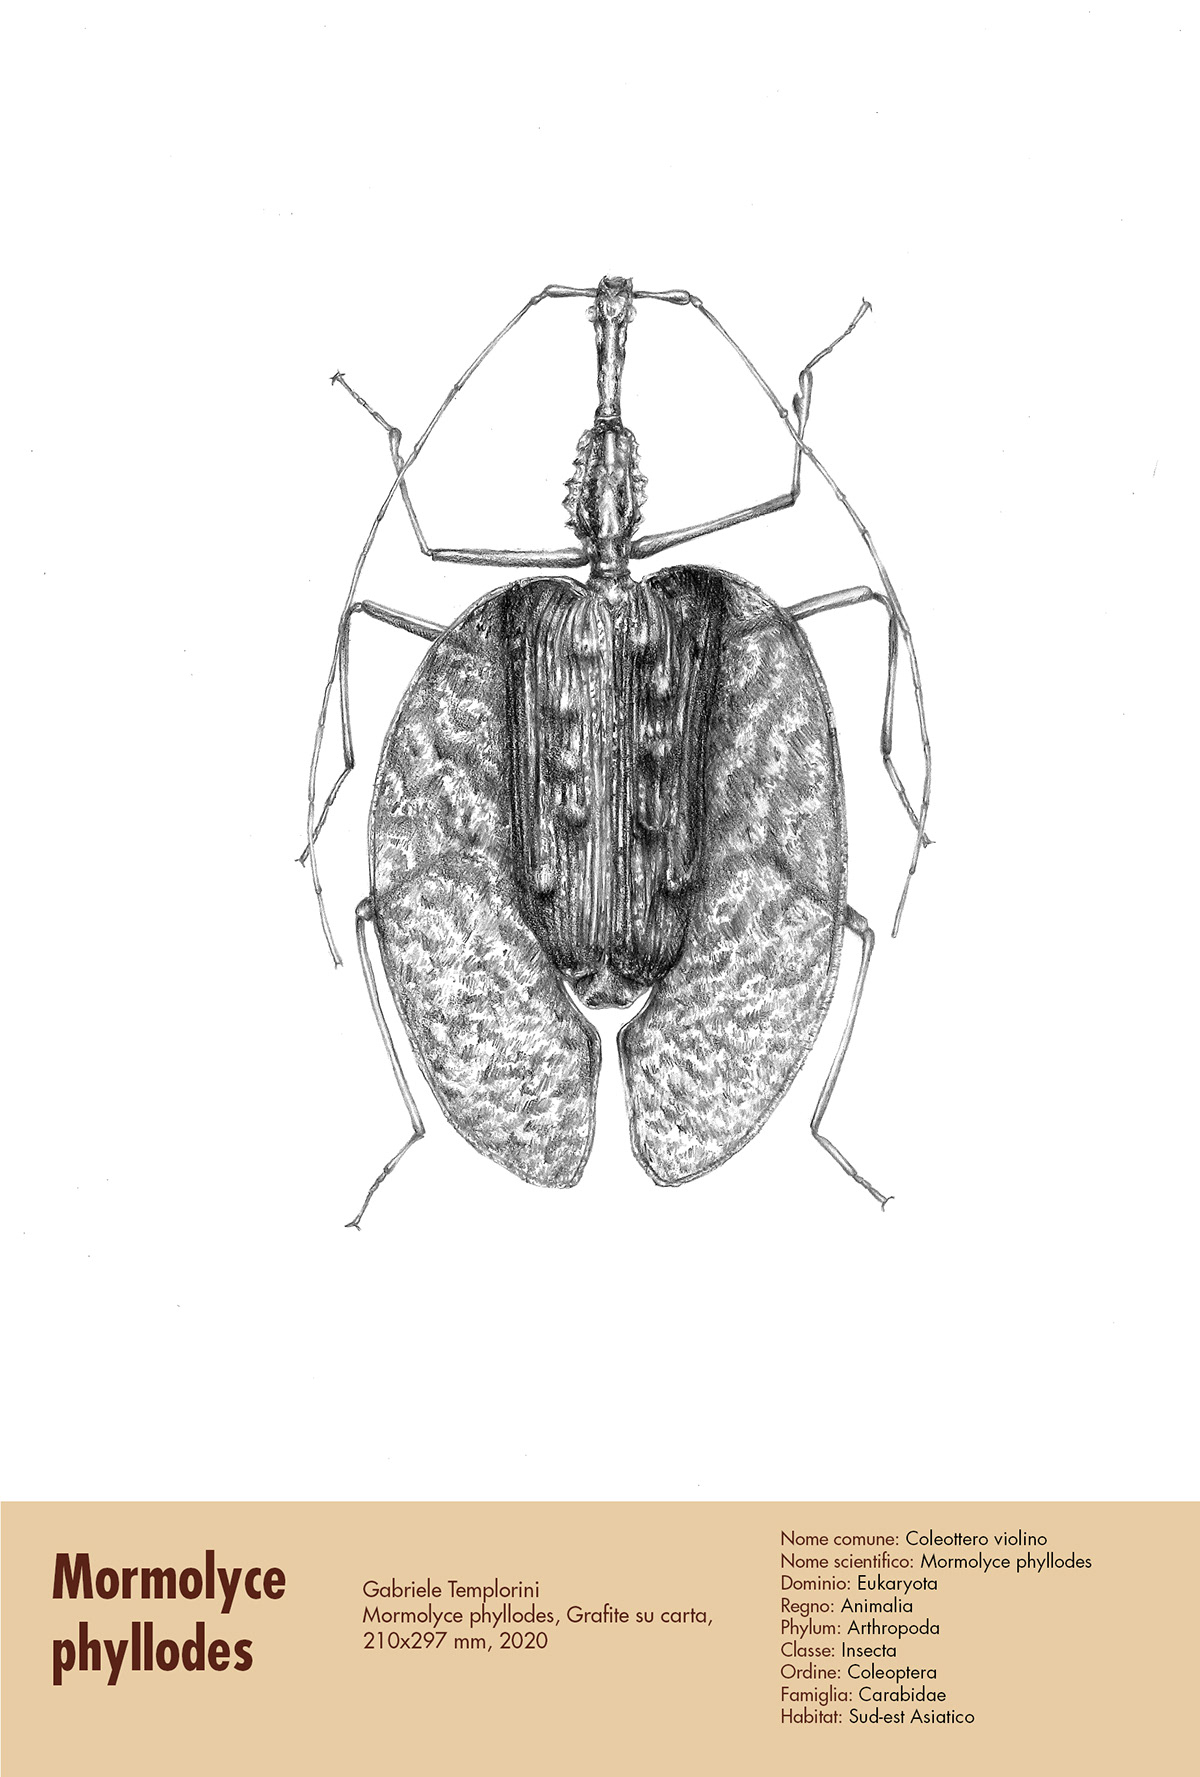 animal illustration illustrazione illustrazione scientifica inchiostro ink matita scientific illustration Vector Illustration watercolor biological illustration